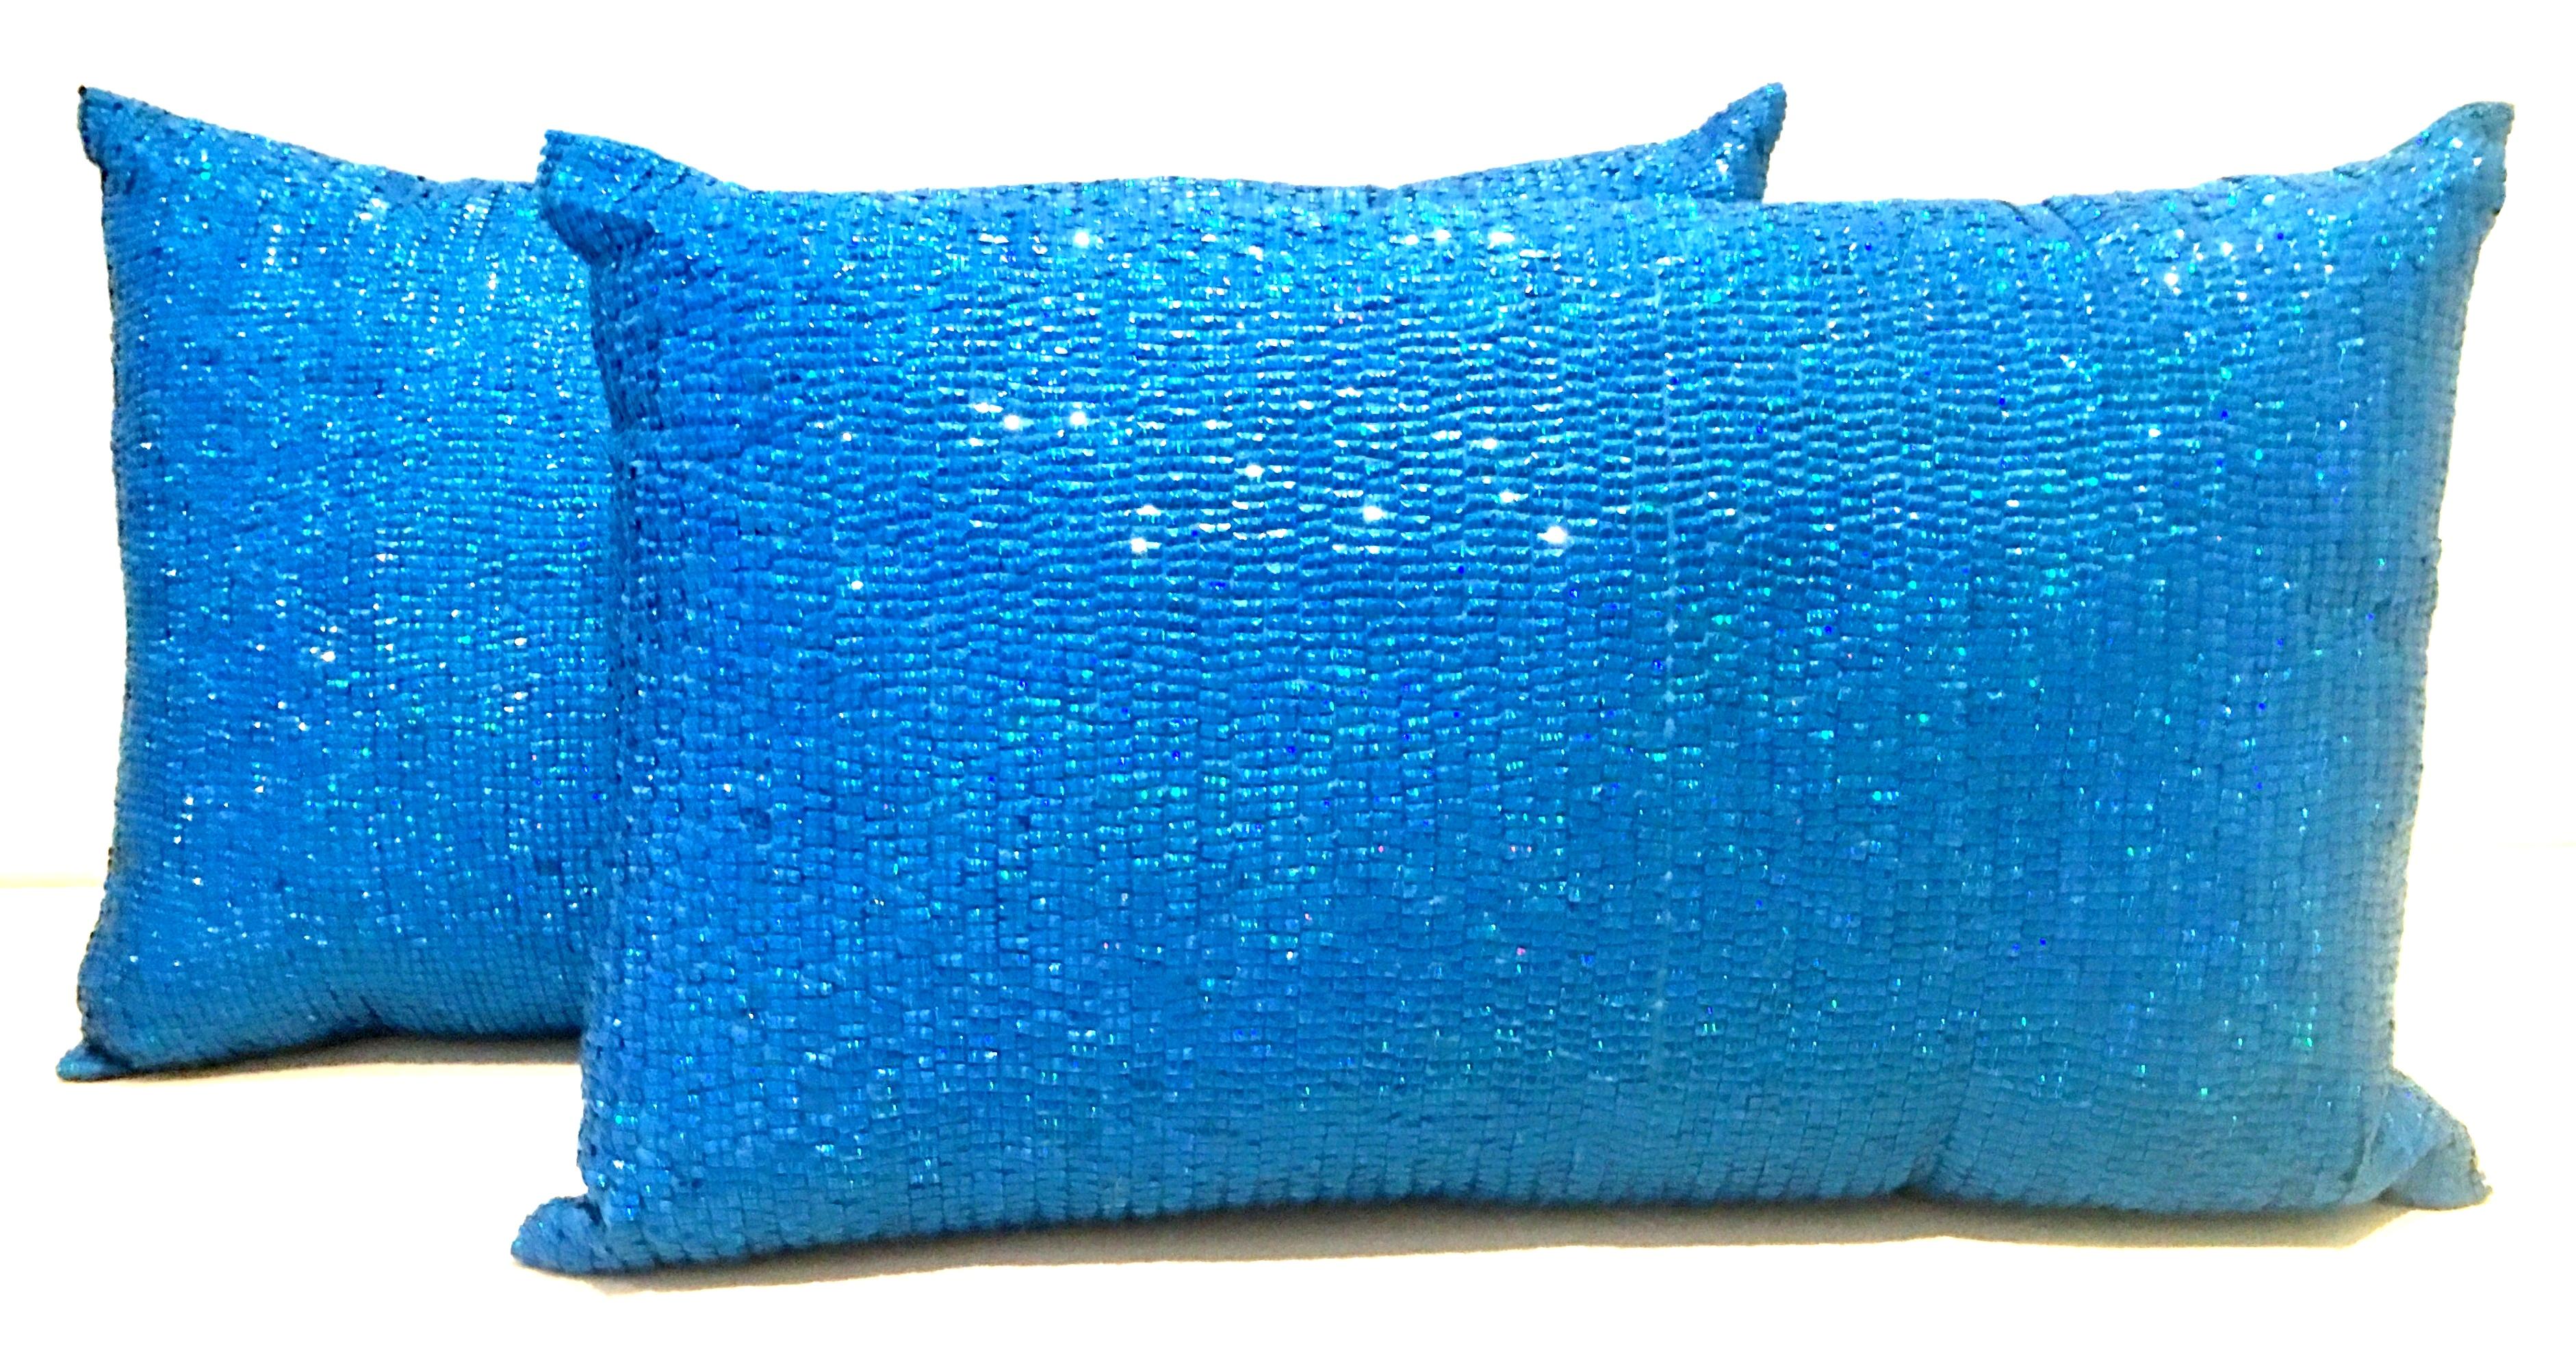 21st Century Pair of new electric blue Austrian crystal and silk down fill pillows. Diese hübschen rechteckigen Kissen sind mit Baumwolldaunen gefüllt und haben einen verdeckten Reißverschluss auf der Rückseite, der das Herausnehmen erleichtert. Nur